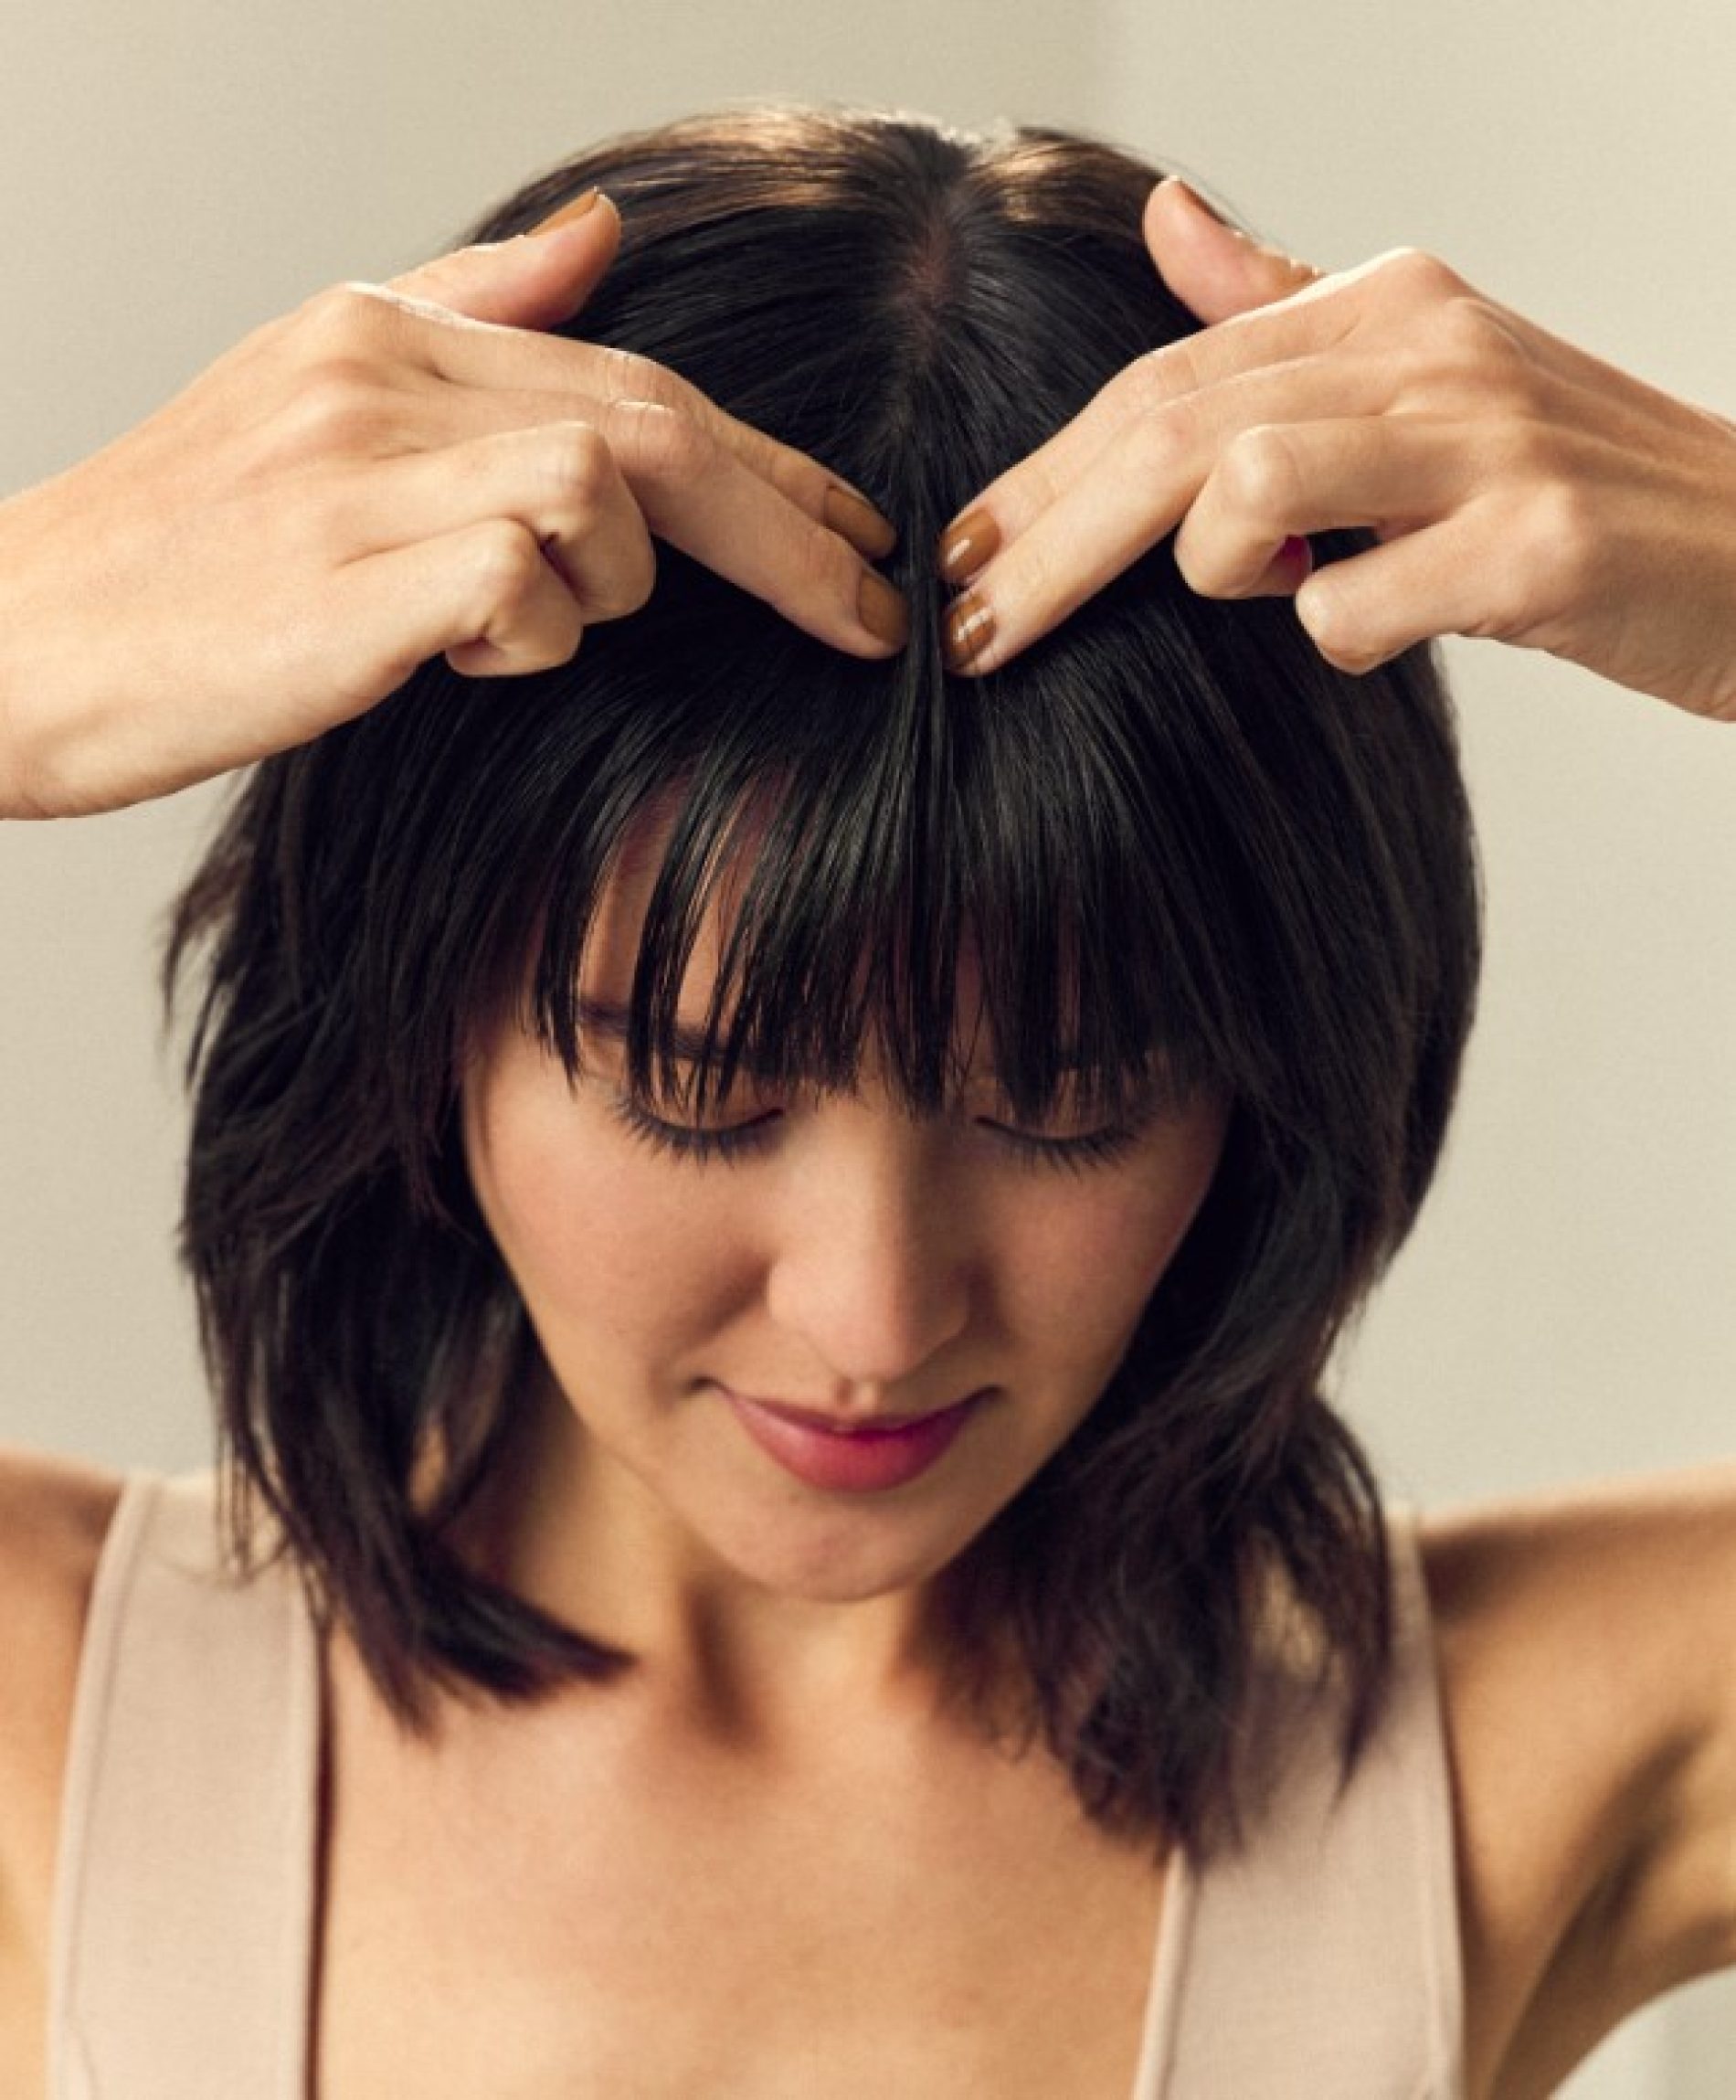 Regenera y fortalece tu cabello con novedoso tratamiento anticaída